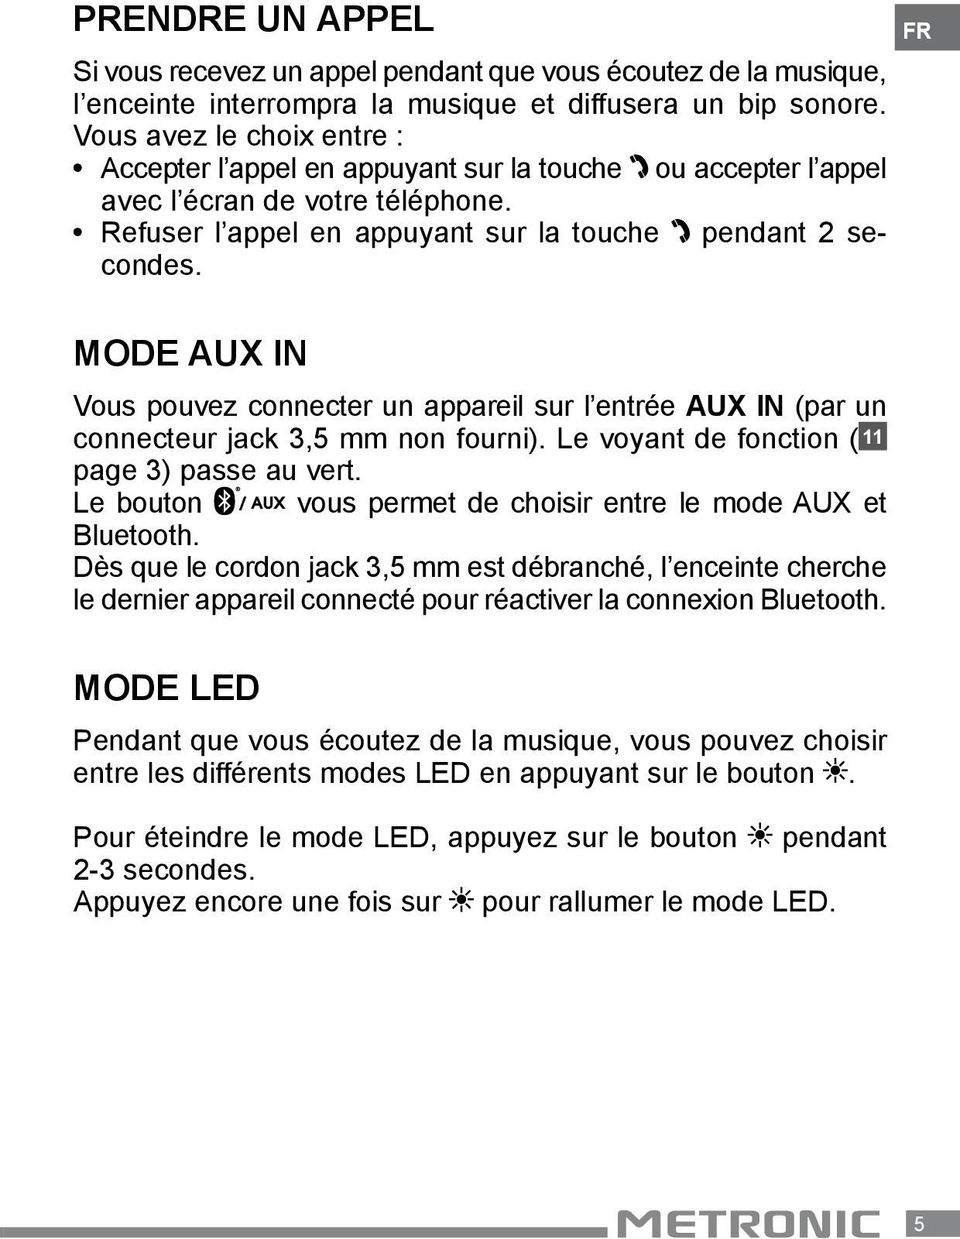 FR Mode AUX IN Vous pouvez connecter un appareil sur l entrée AUX IN (par un connecteur jack 3,5 mm non fourni). Le voyant de fonction ( 11 page 3) passe au vert.